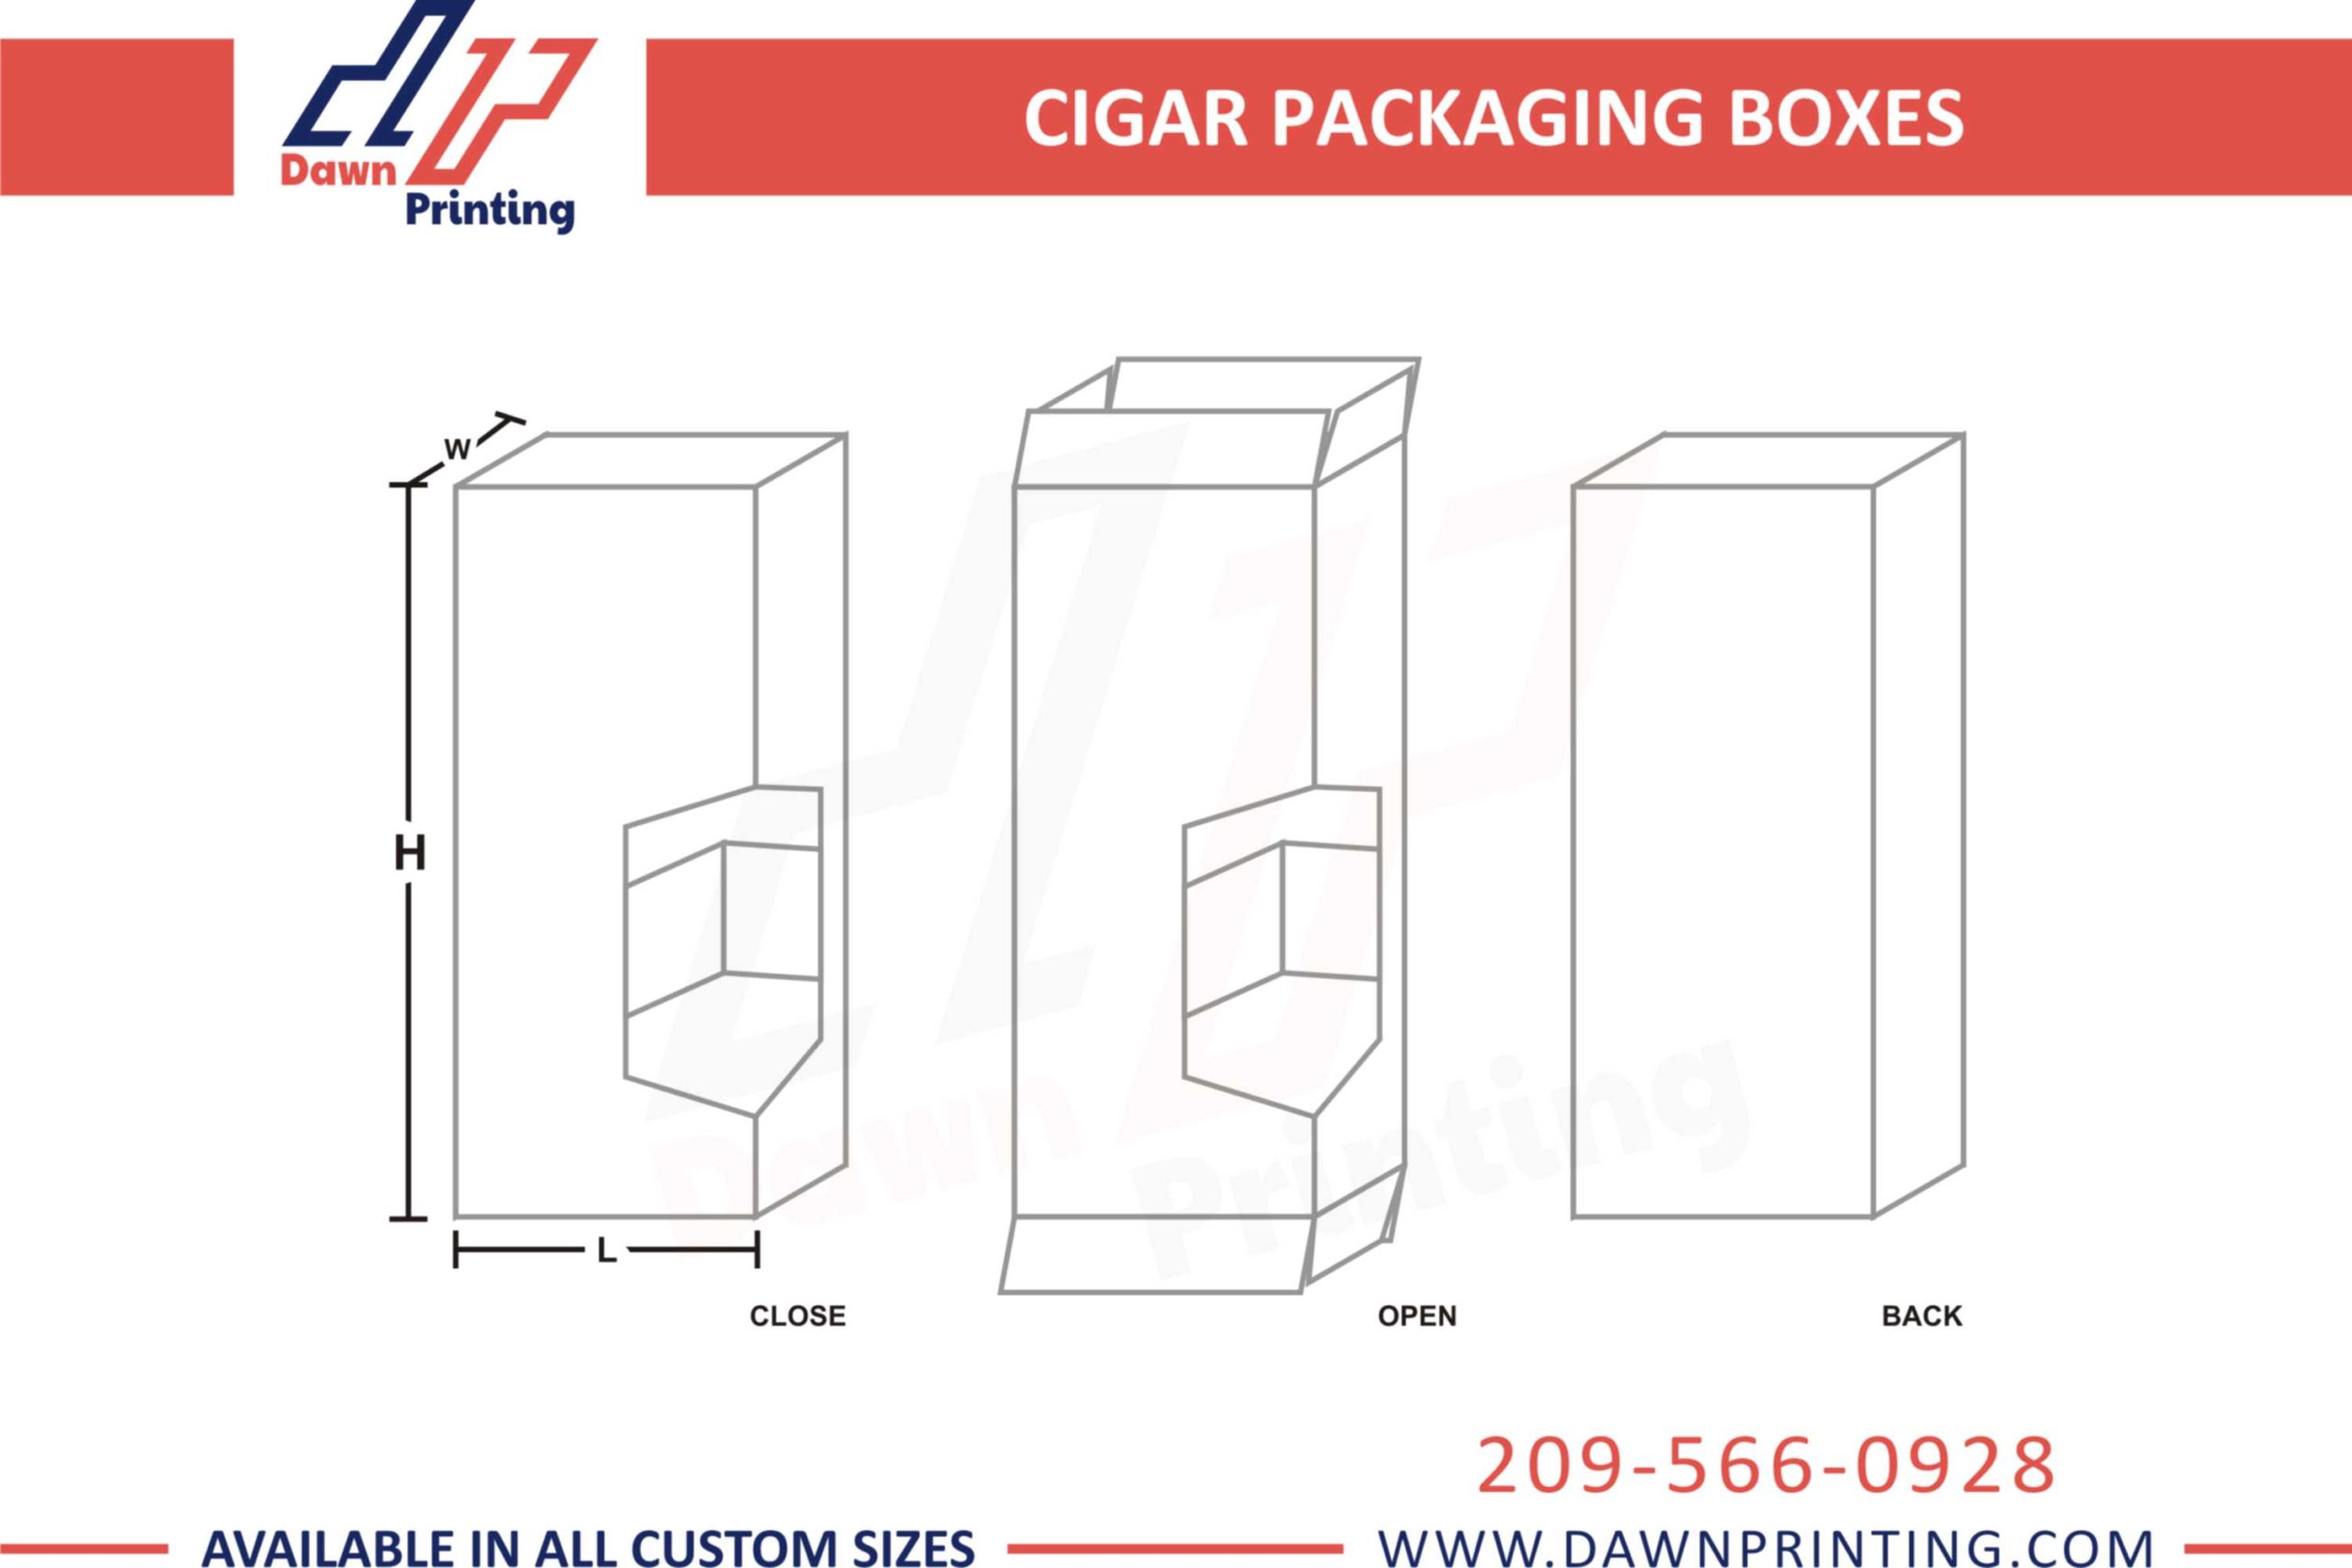 Mock up Cigar Packaging Boxes - Dawn Prinitng